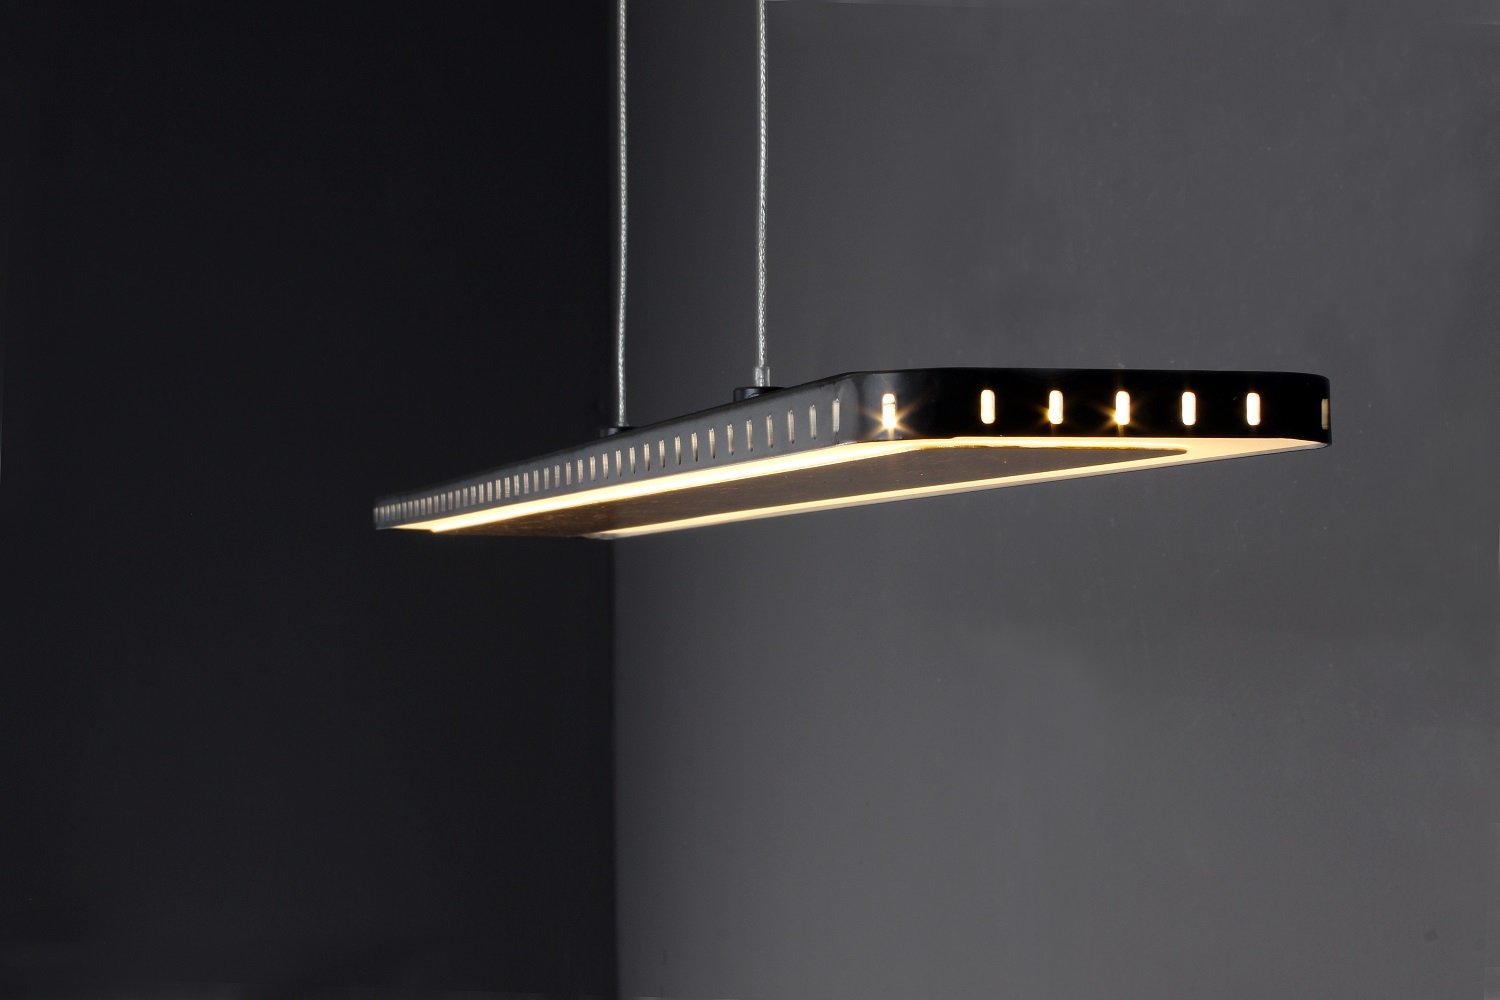 Luce Design Solaris 9052 S gold LED Pendelleuchte 2-flammig ECO Light -->  Leuchten & Lampen online kaufen im Shop